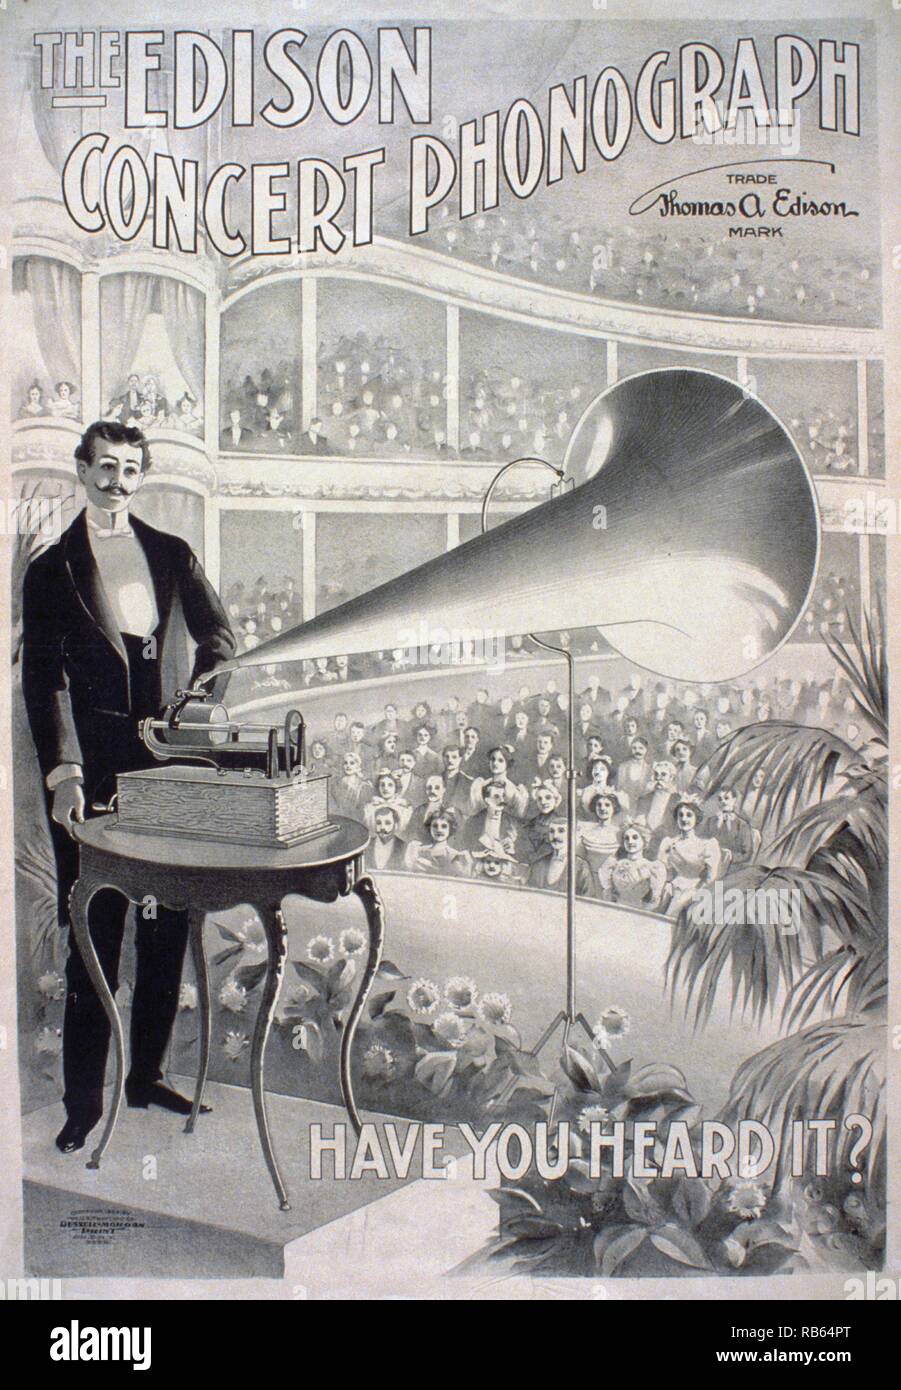 Werbeplakat für Edison Phonographen, das einen Mann zeigt spielen einem Plattenspieler auf einer Bühne vor großem Publikum in einer großen Konzerthalle sitzen. Stockfoto